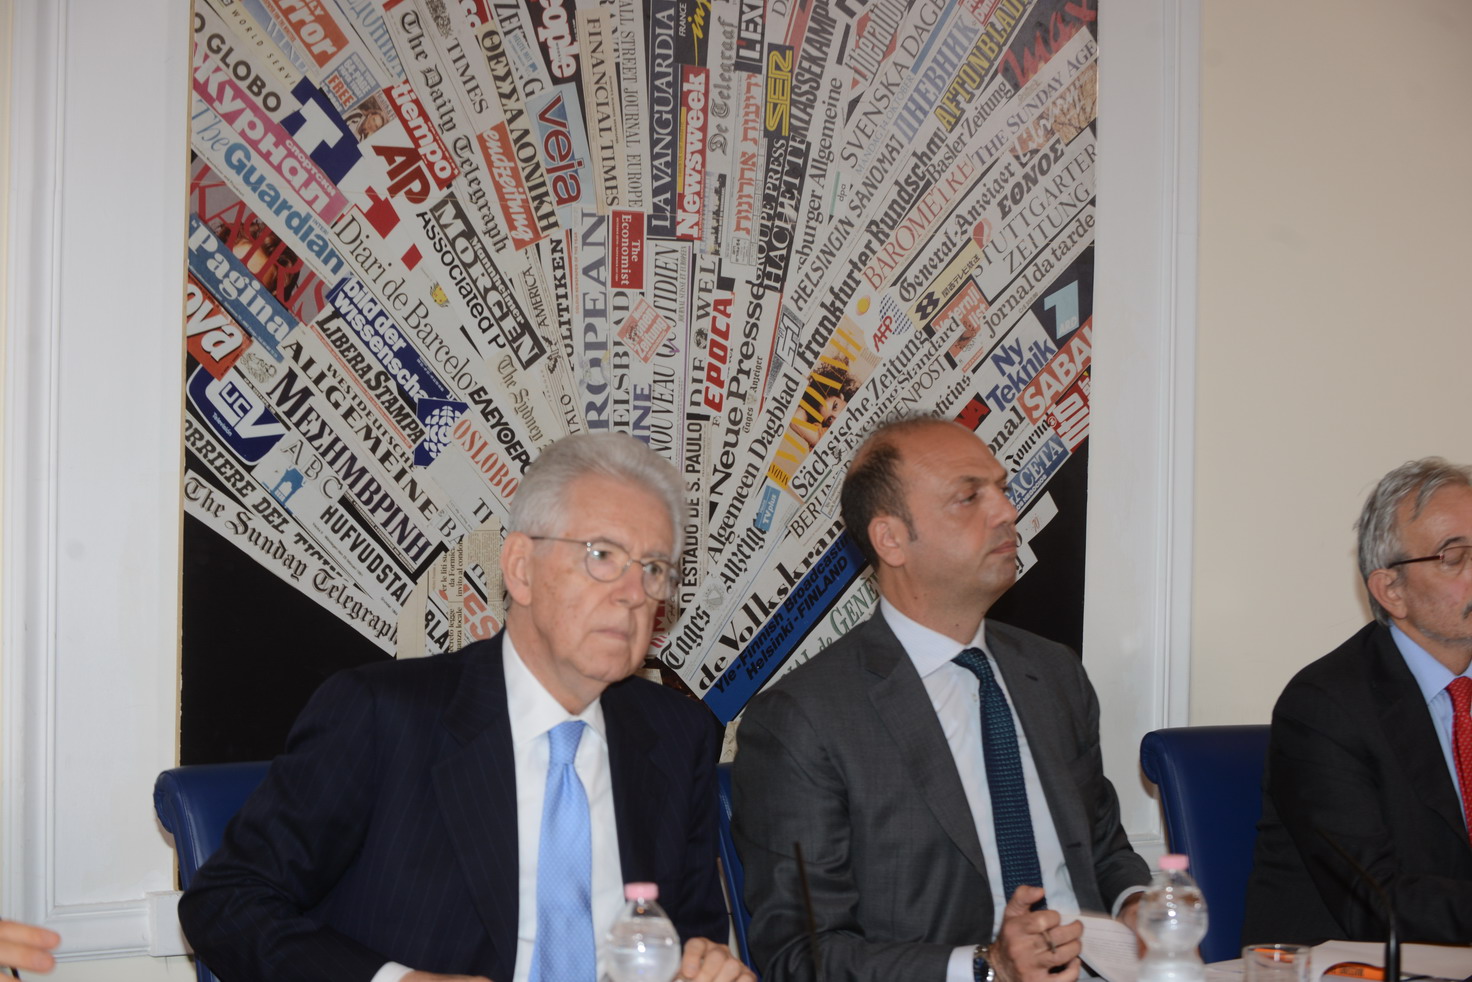 Mario Monti e Angelino Alfano